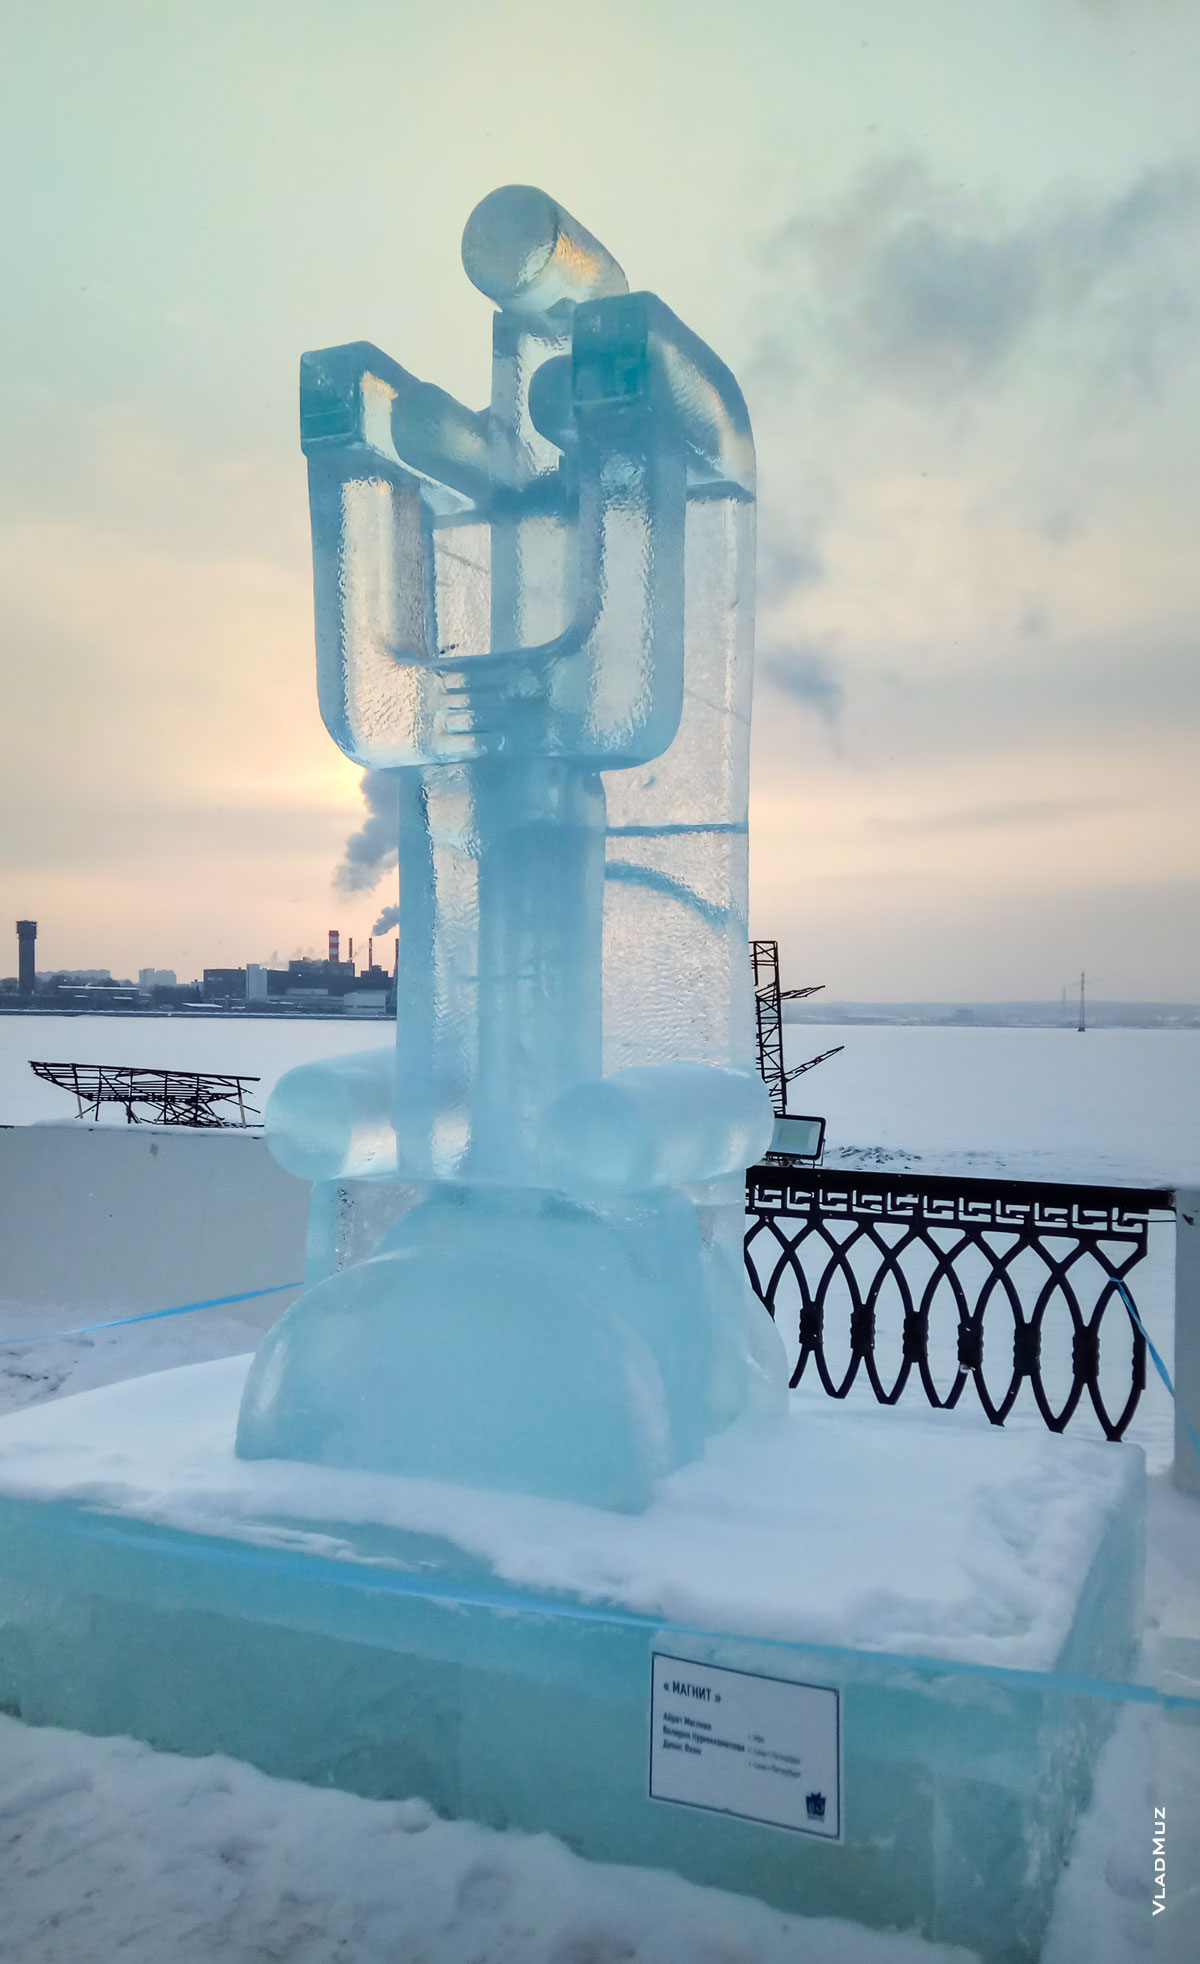 Ижевск, фестиваль «Удмуртский лед 2018»: фото ледовой скульптуры «Магнит», занесенной снегом